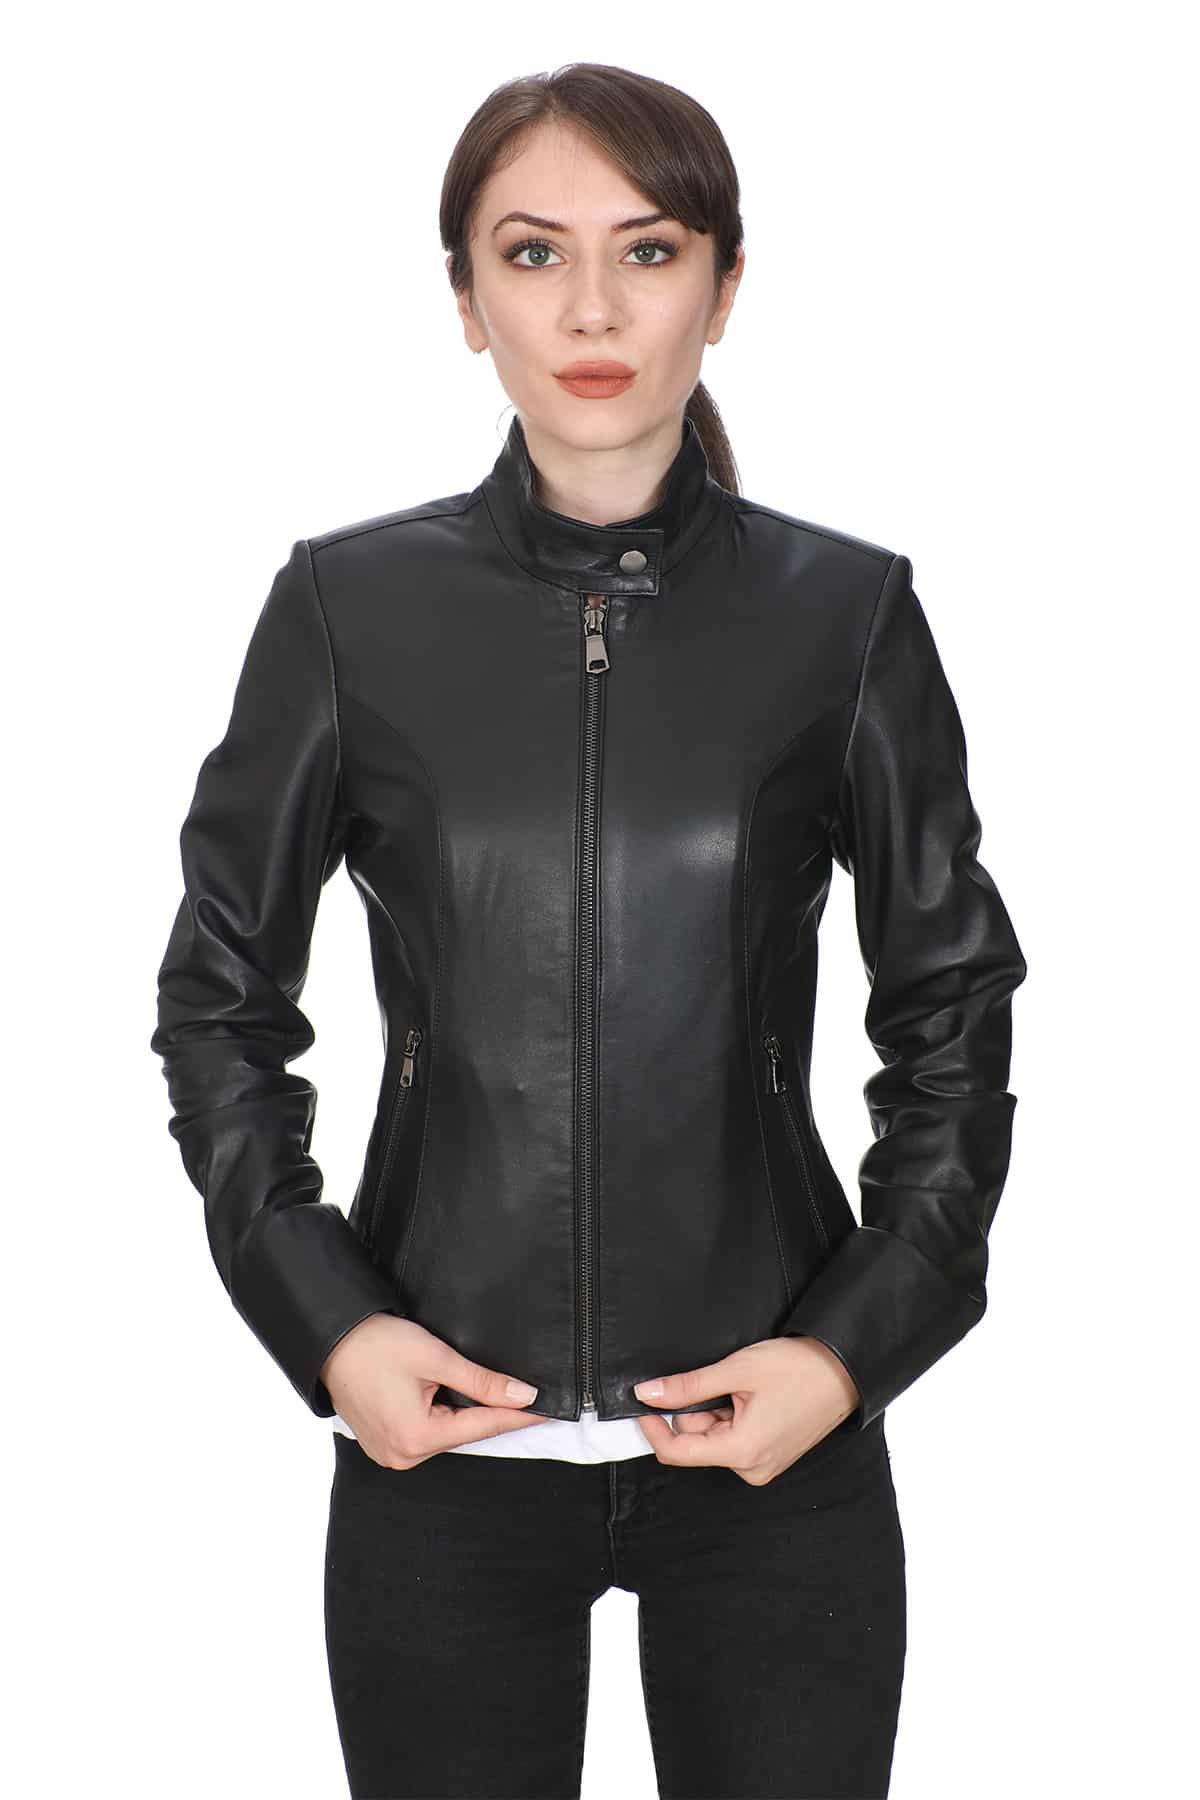 Scarlett Women's 100 % Real Black Leather Biker Style Jacket